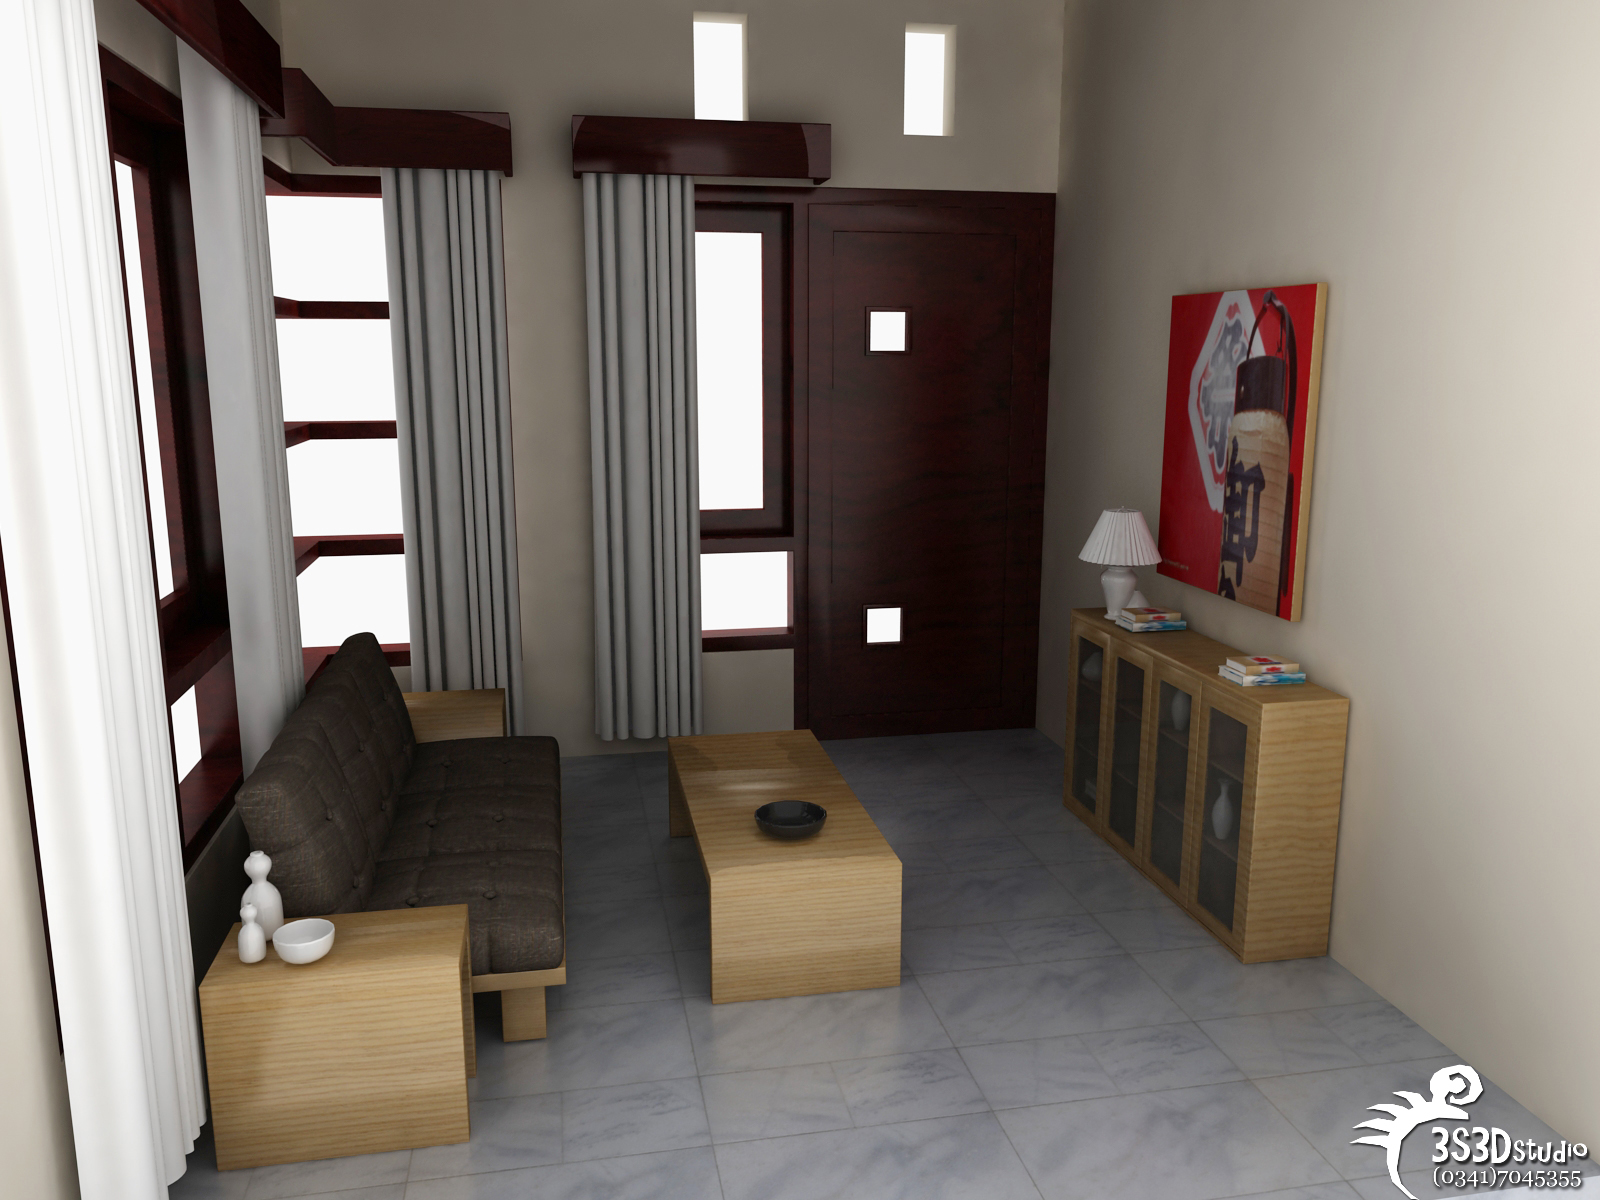  Desain  Ruang  Tamu  Rumah Minimalis Desain  Interior  Terbaru